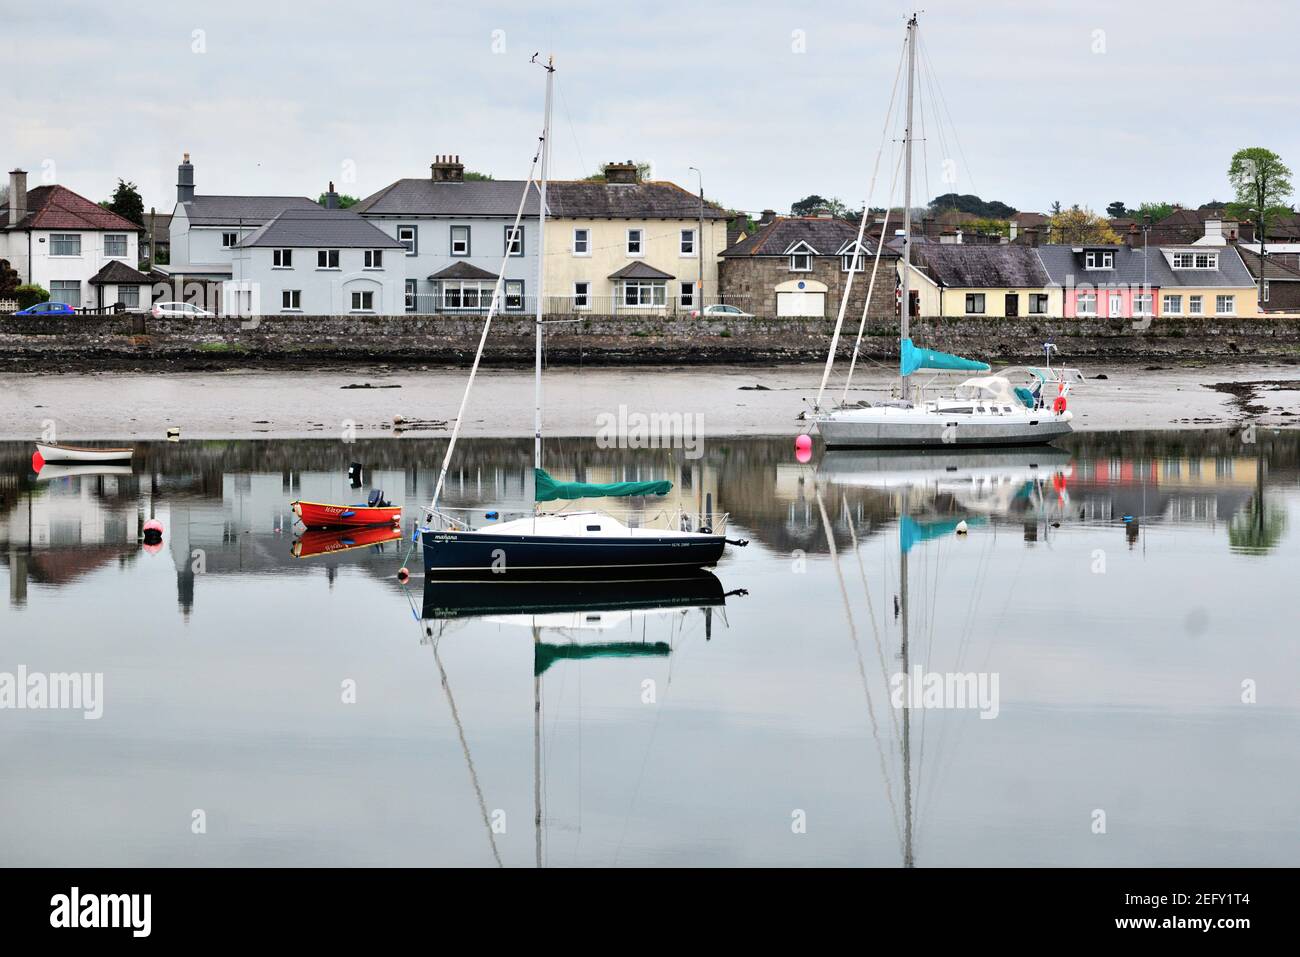 Dungarvan, County Waterford, Irlanda. Piccole barche e barche a vela contribuiscono a creare un porto colorato nella comunità costiera irlandese di Dungarvan. Foto Stock